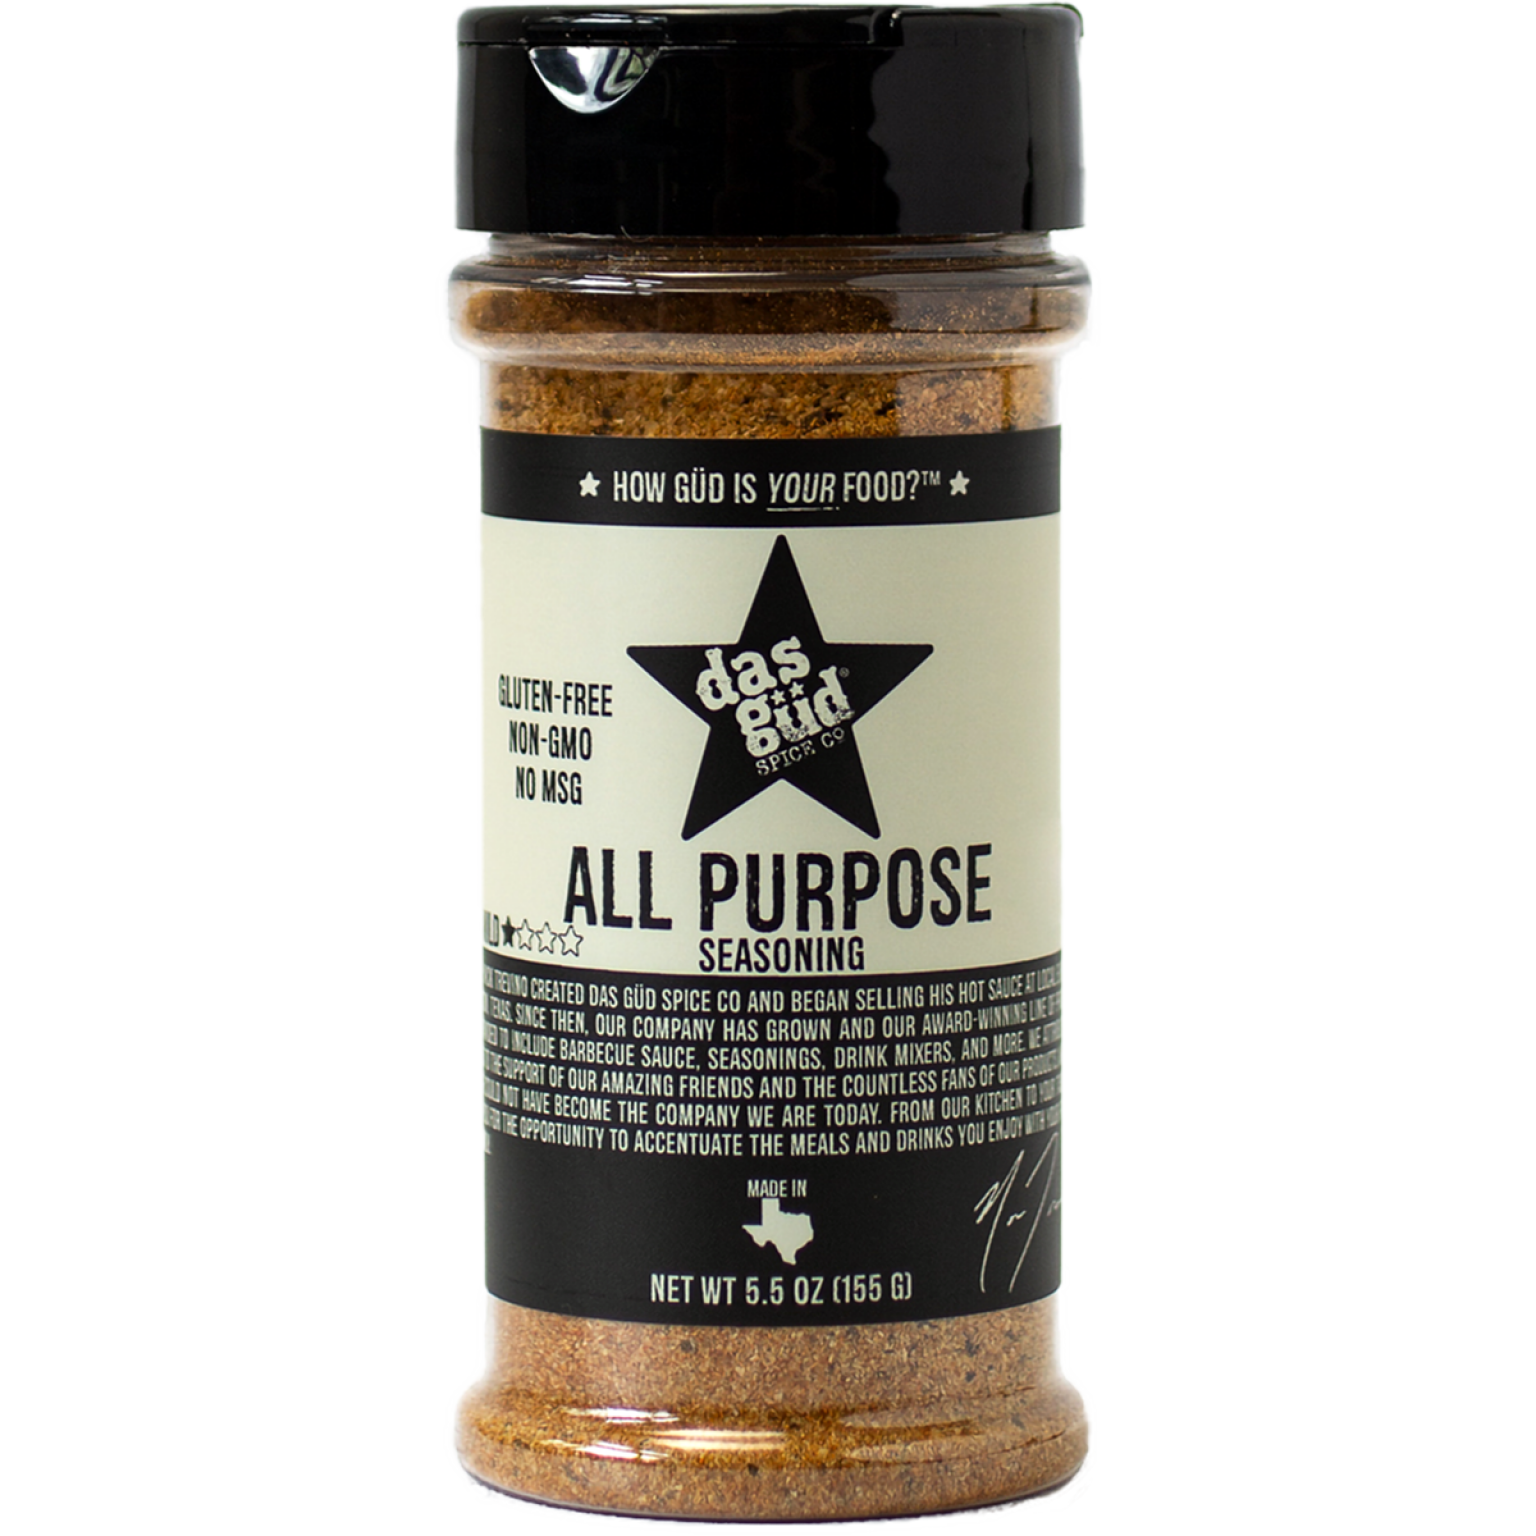 All Purpose Seasoning Das Güd Spice Co.